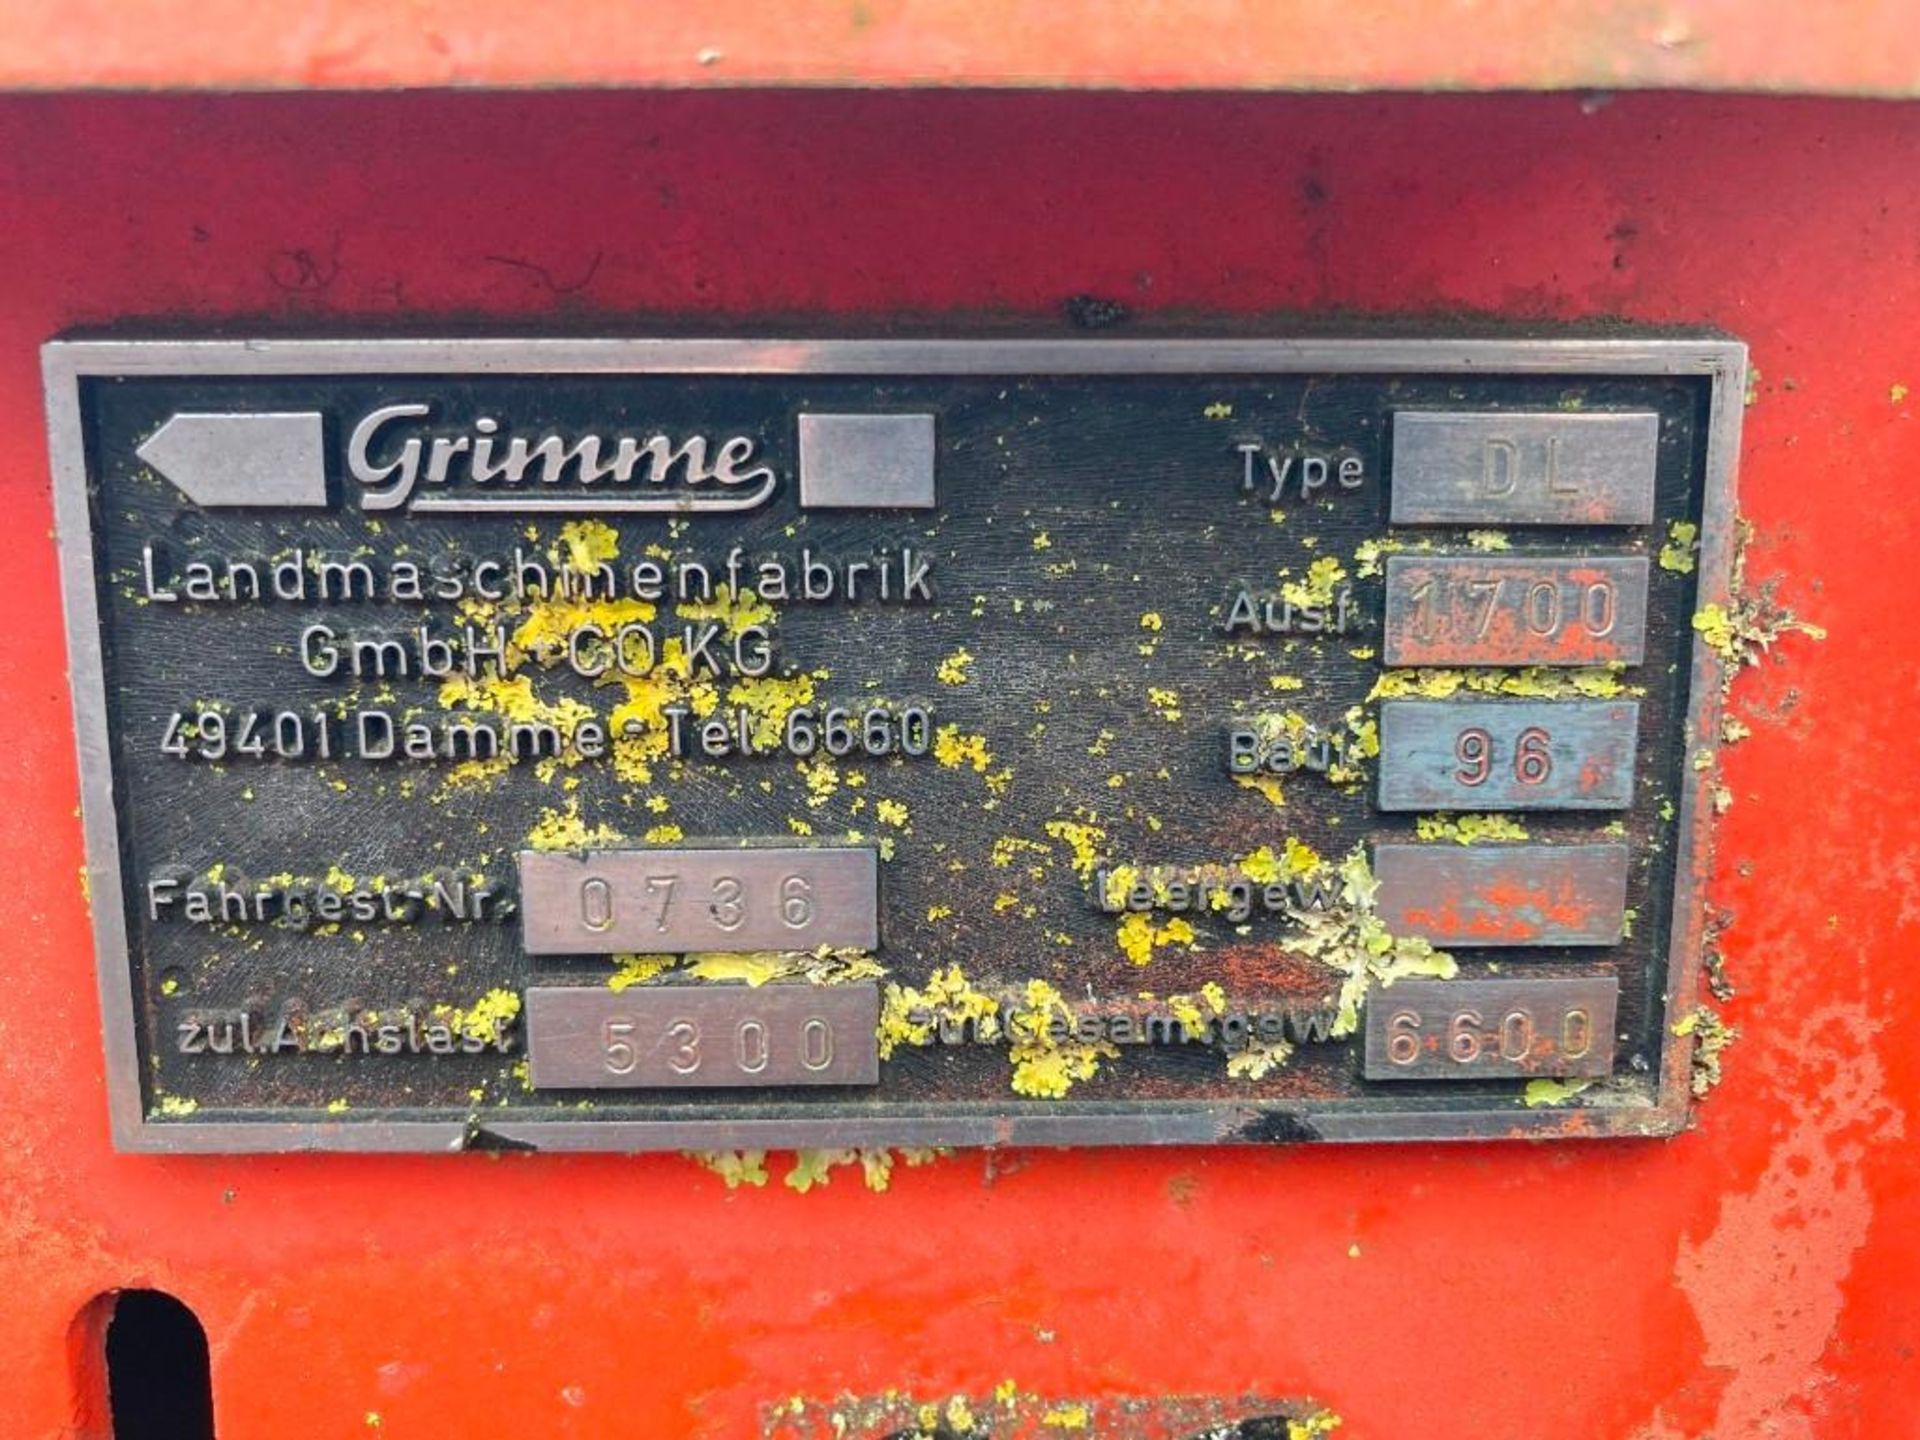 Grimme DL 1700 Harvester - Image 6 of 6